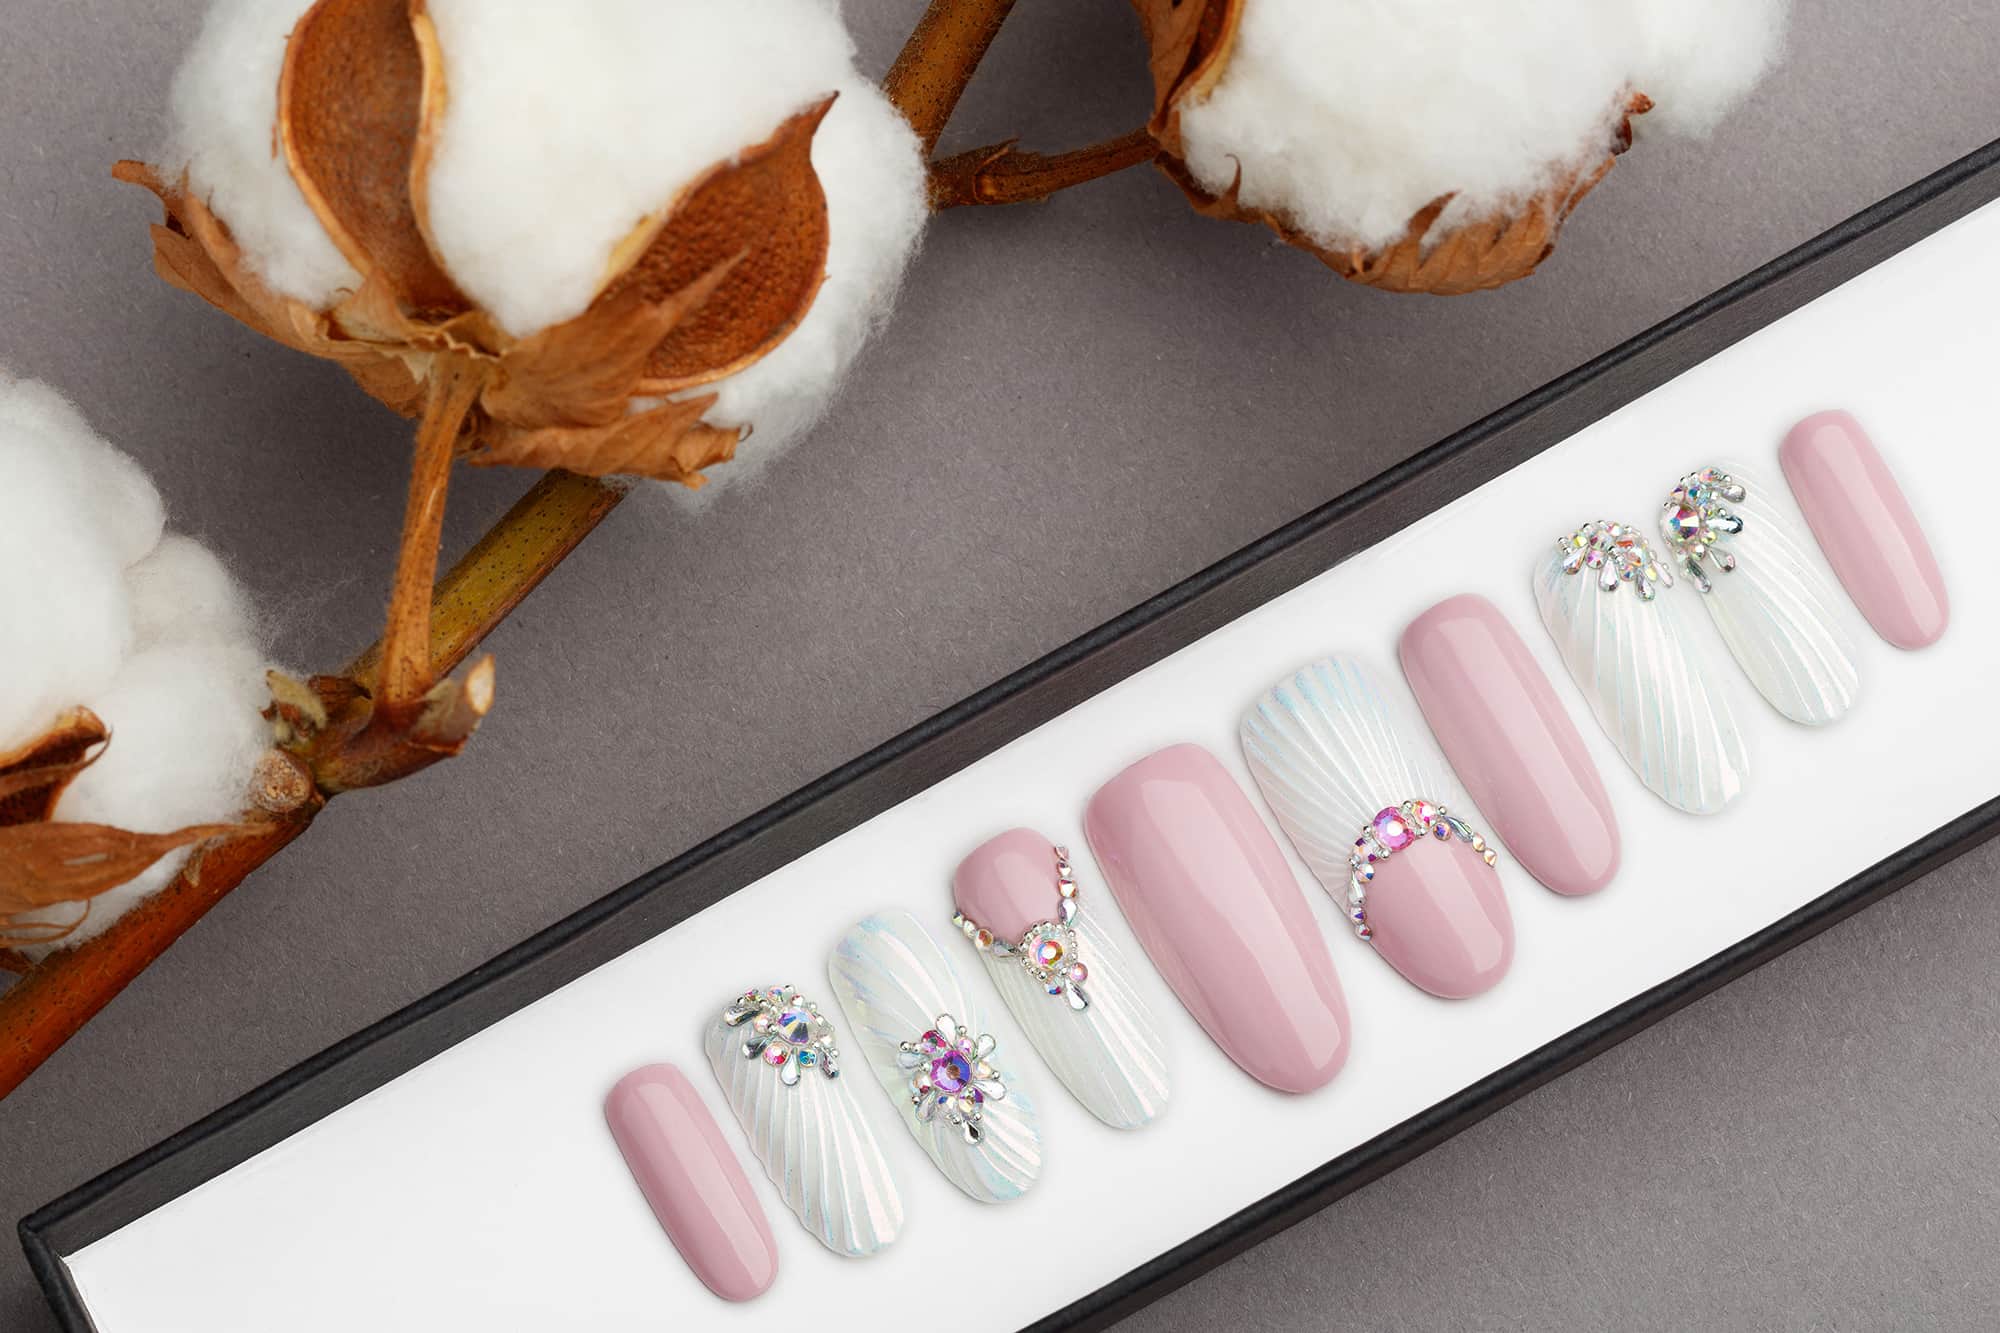 Snow Pearl Press on Nails with Swarovski Crystals | Wedding nails | Hand painted Nail Art | Fake Nails | False Nails |